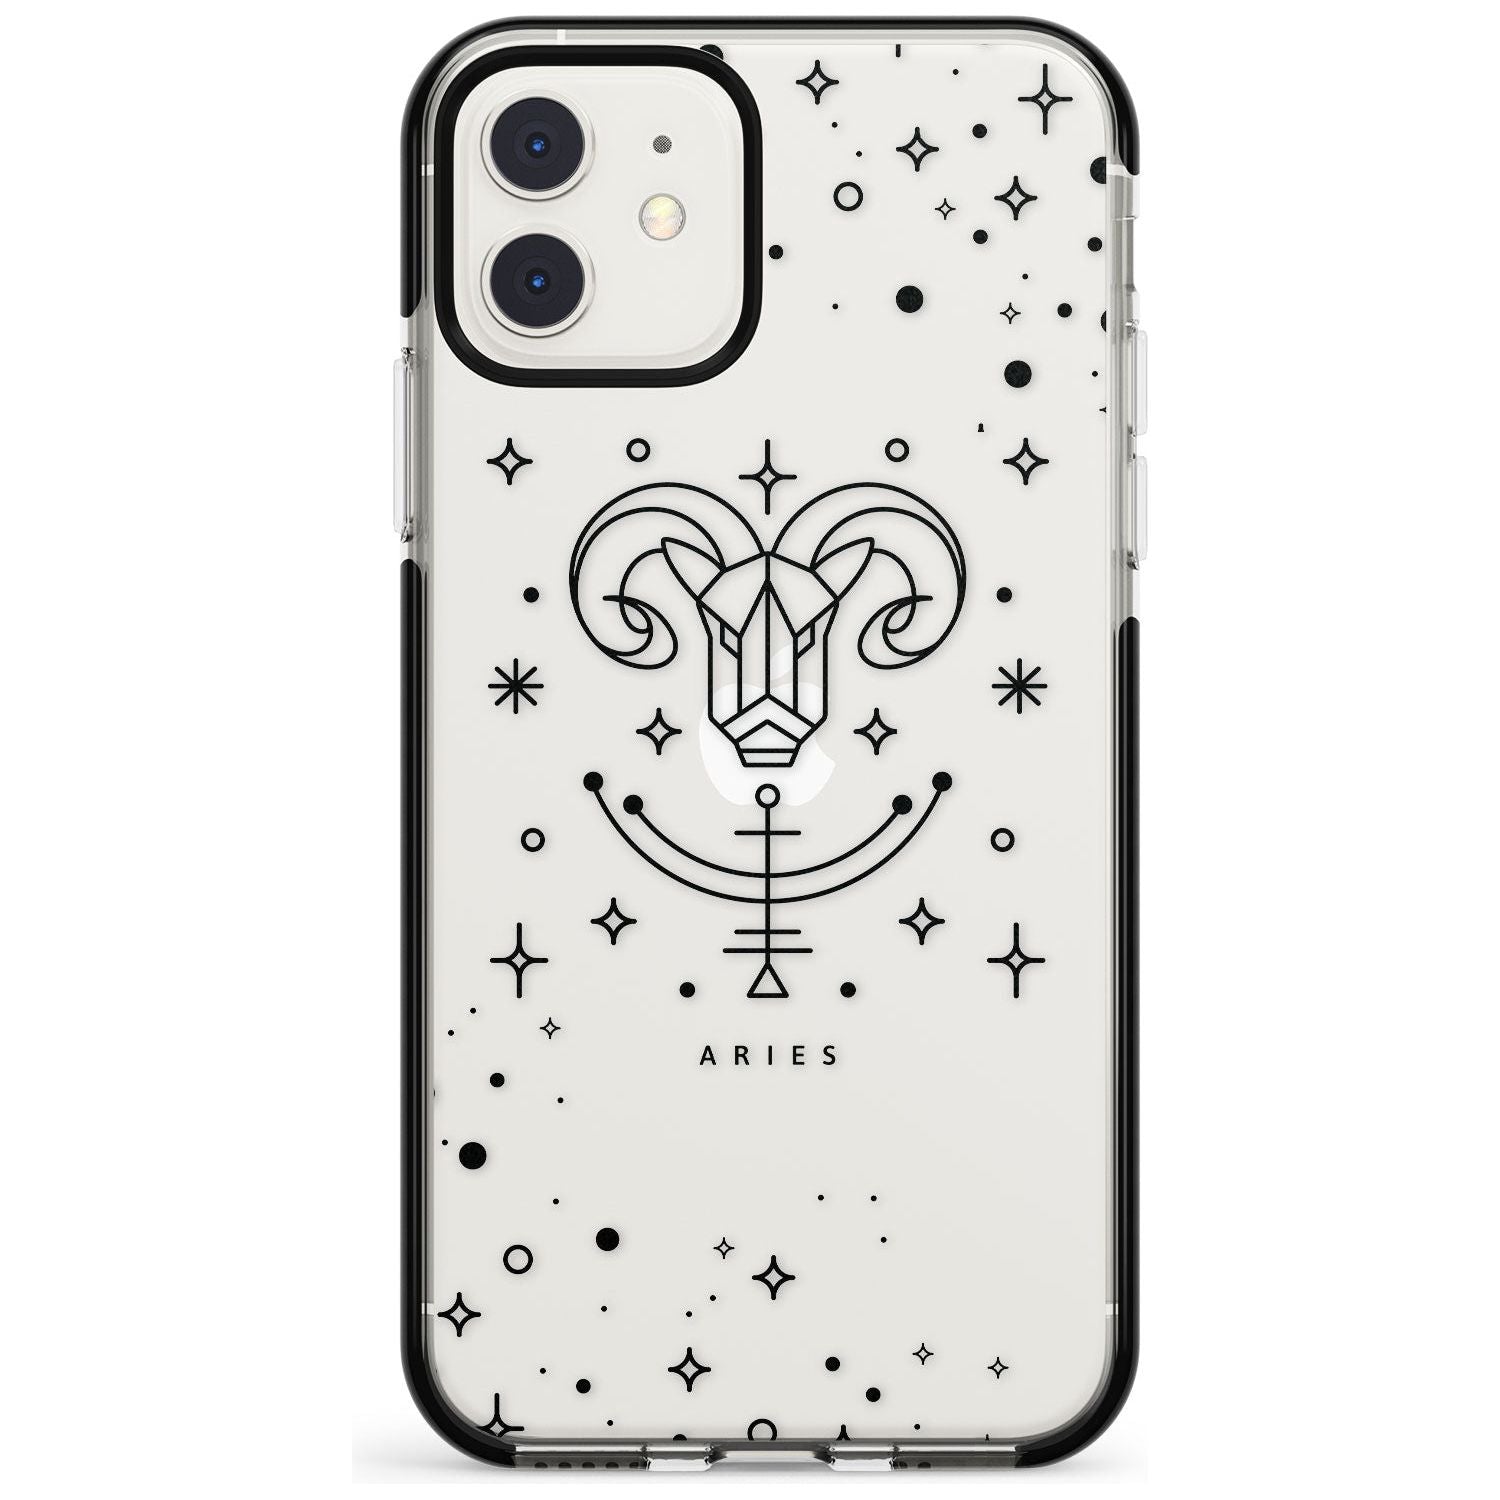 Aries Emblem - Transparent Design Black Impact Phone Case for iPhone 11